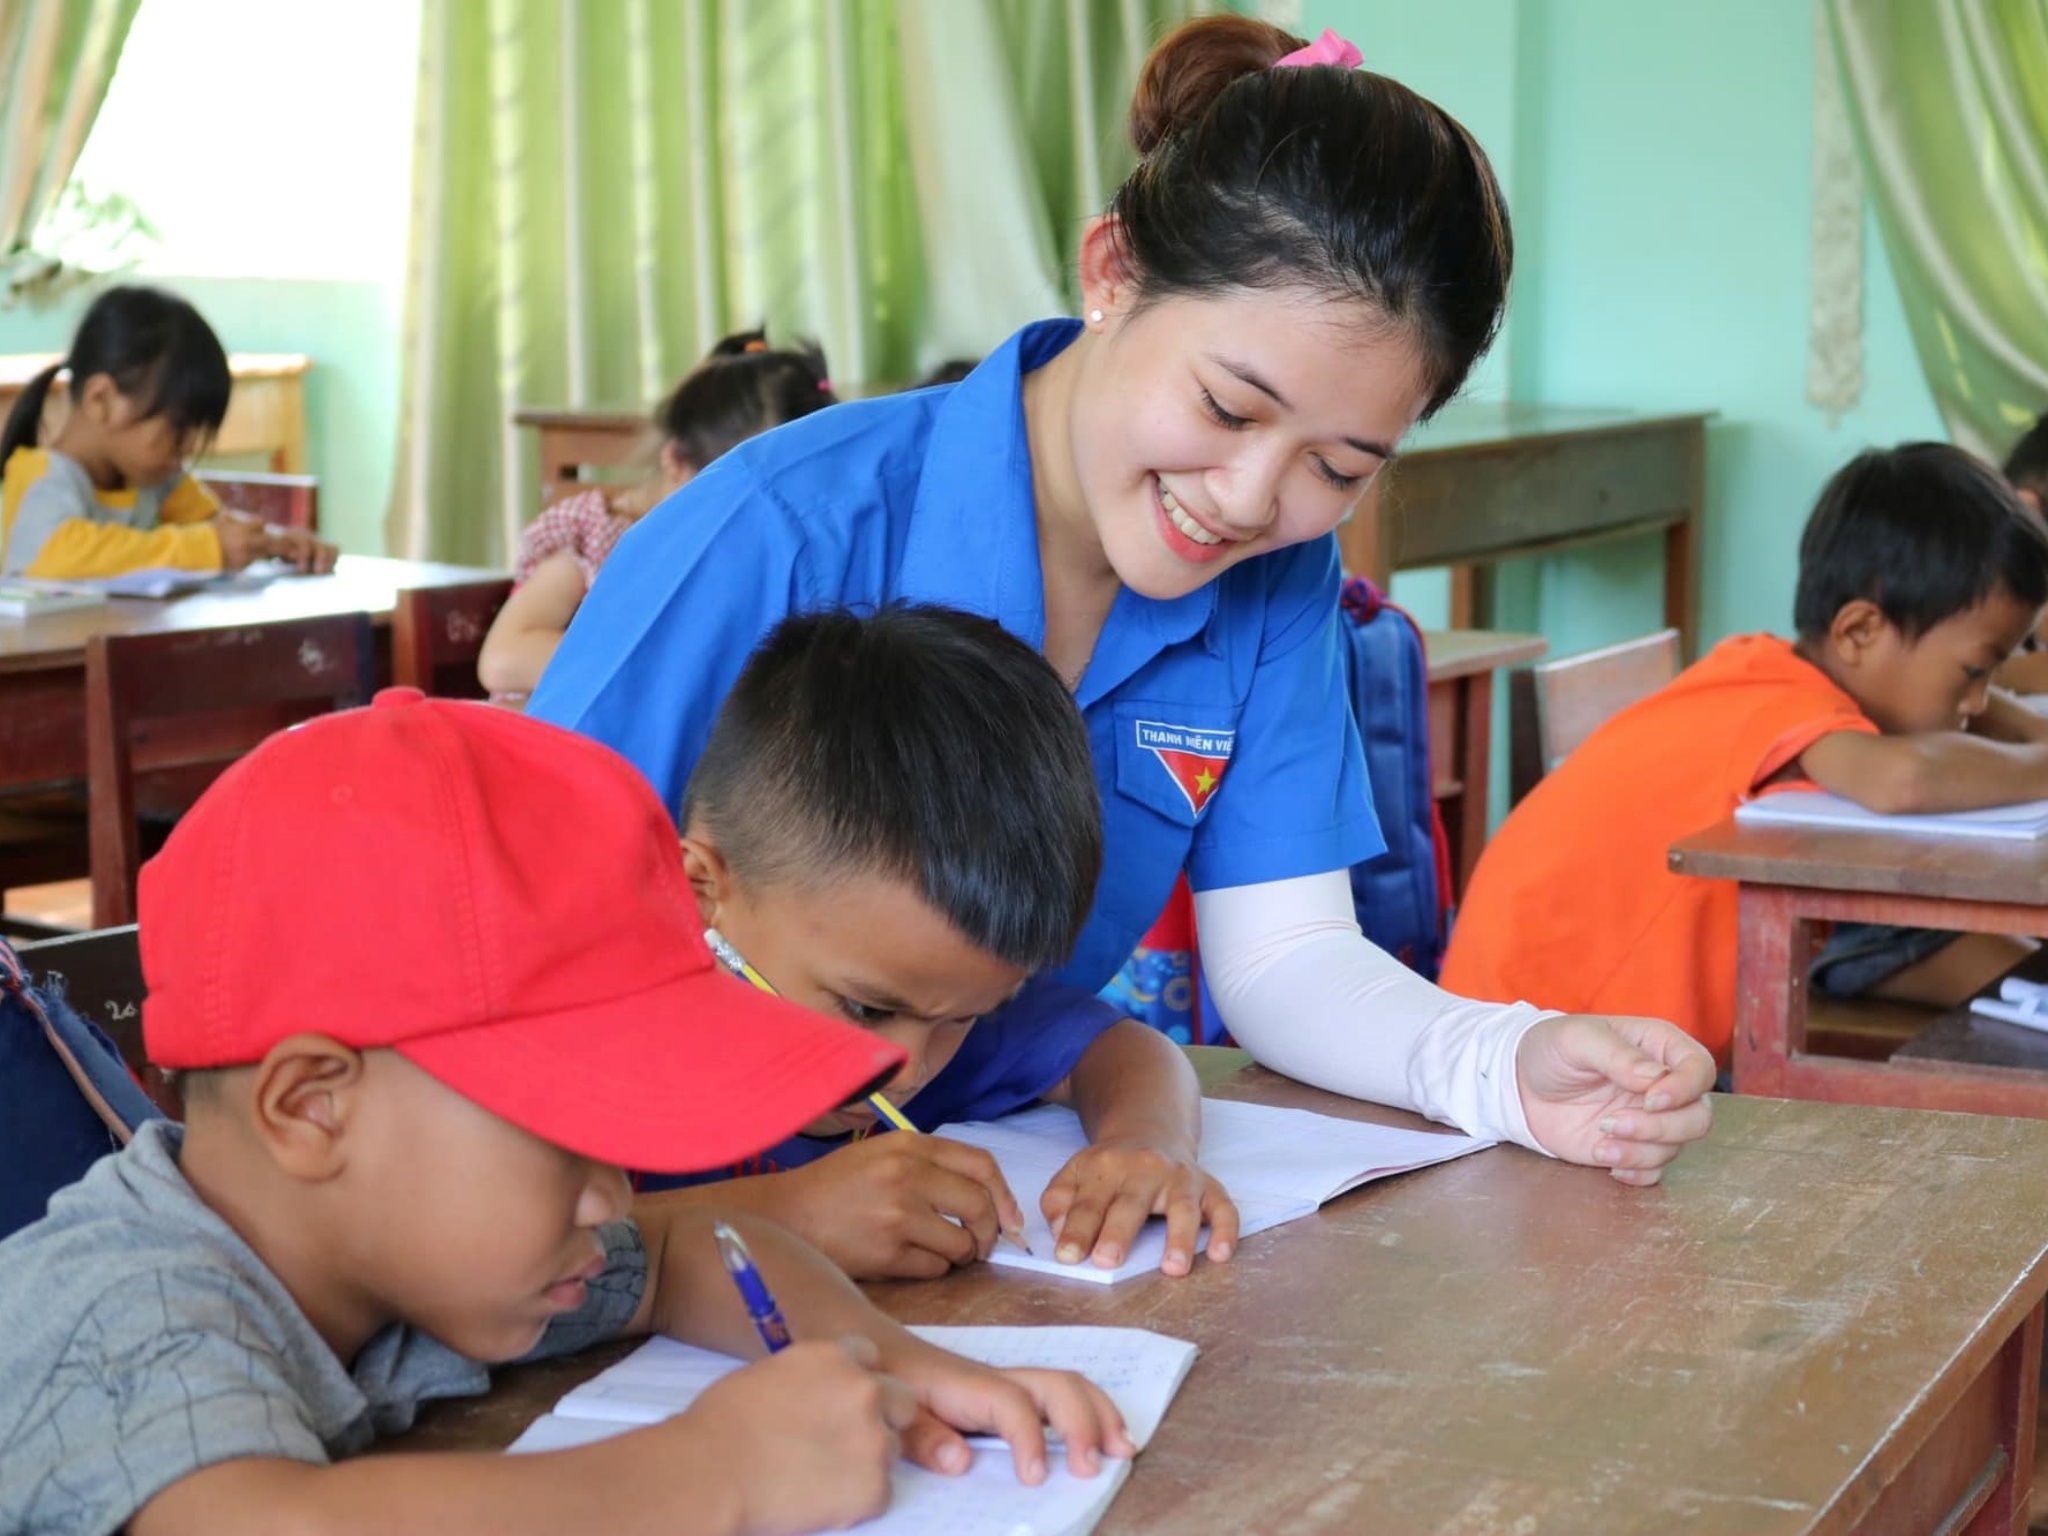 Hãy cùng xem hình về hoạt động tình nguyện tại Bình Định, nơi các tình nguyện viên đang nỗ lực mang lại niềm vui và sự ủng hộ cho cộng đồng. Đây là cơ hội tuyệt vời để chúng ta trải nghiệm những giây phút đầy ý nghĩa và sự đồng cảm với những người cần được giúp đỡ.